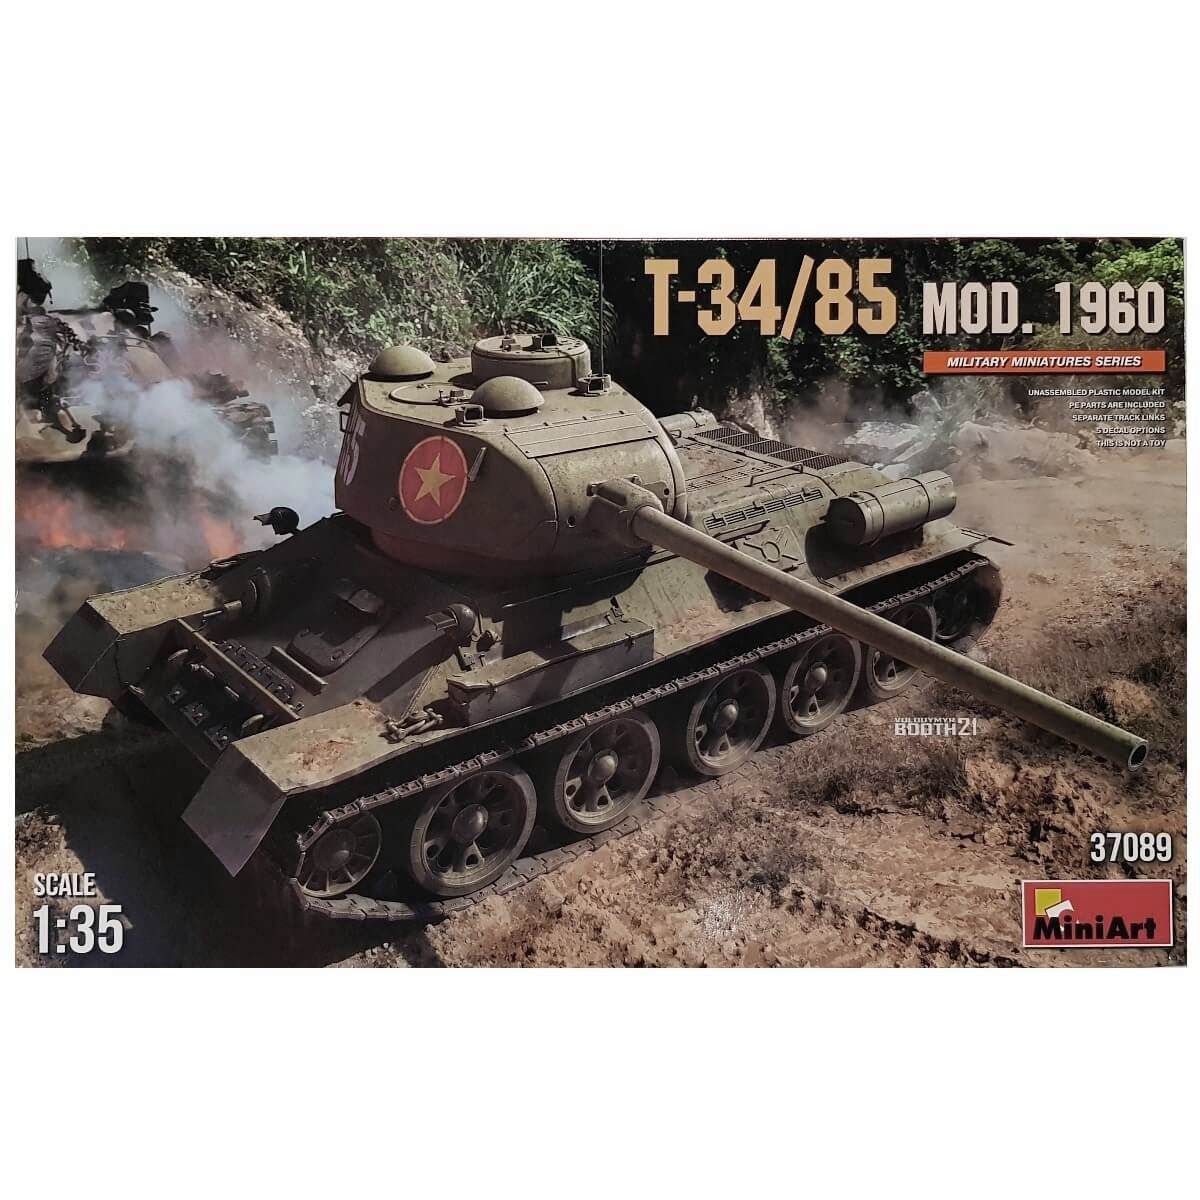 1:35 T-34/85 Mod. 1960 - MINIART